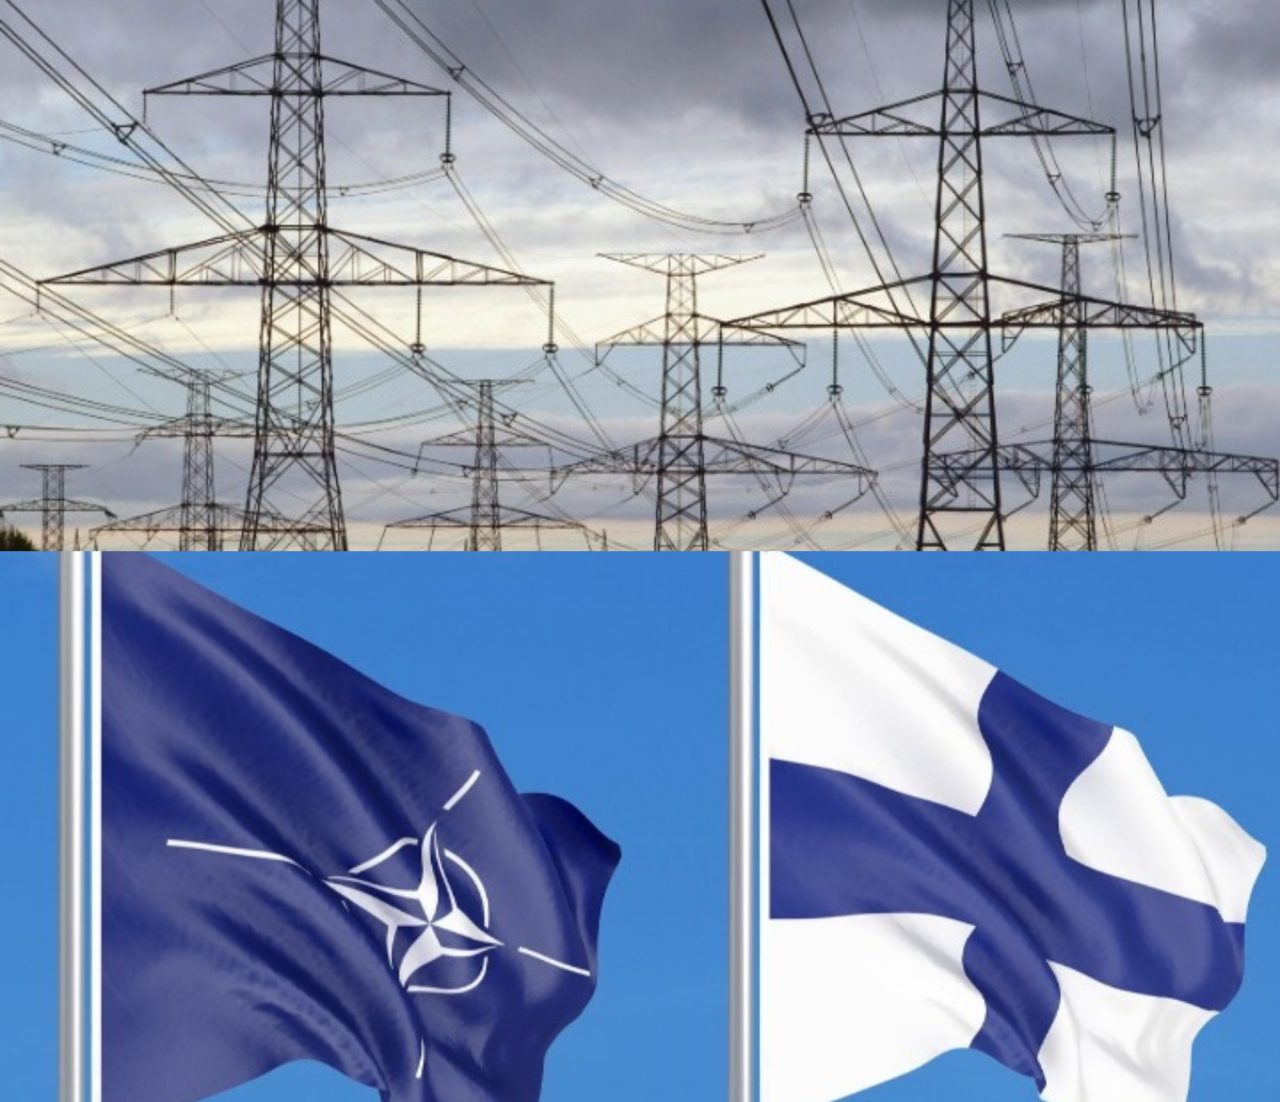 Η Ρωσία έκοψε το ηλεκτρικό ρεύμα στη Φινλανδία - «Είχαμε προετοιμαστεί», λέει το Ελσίνκι